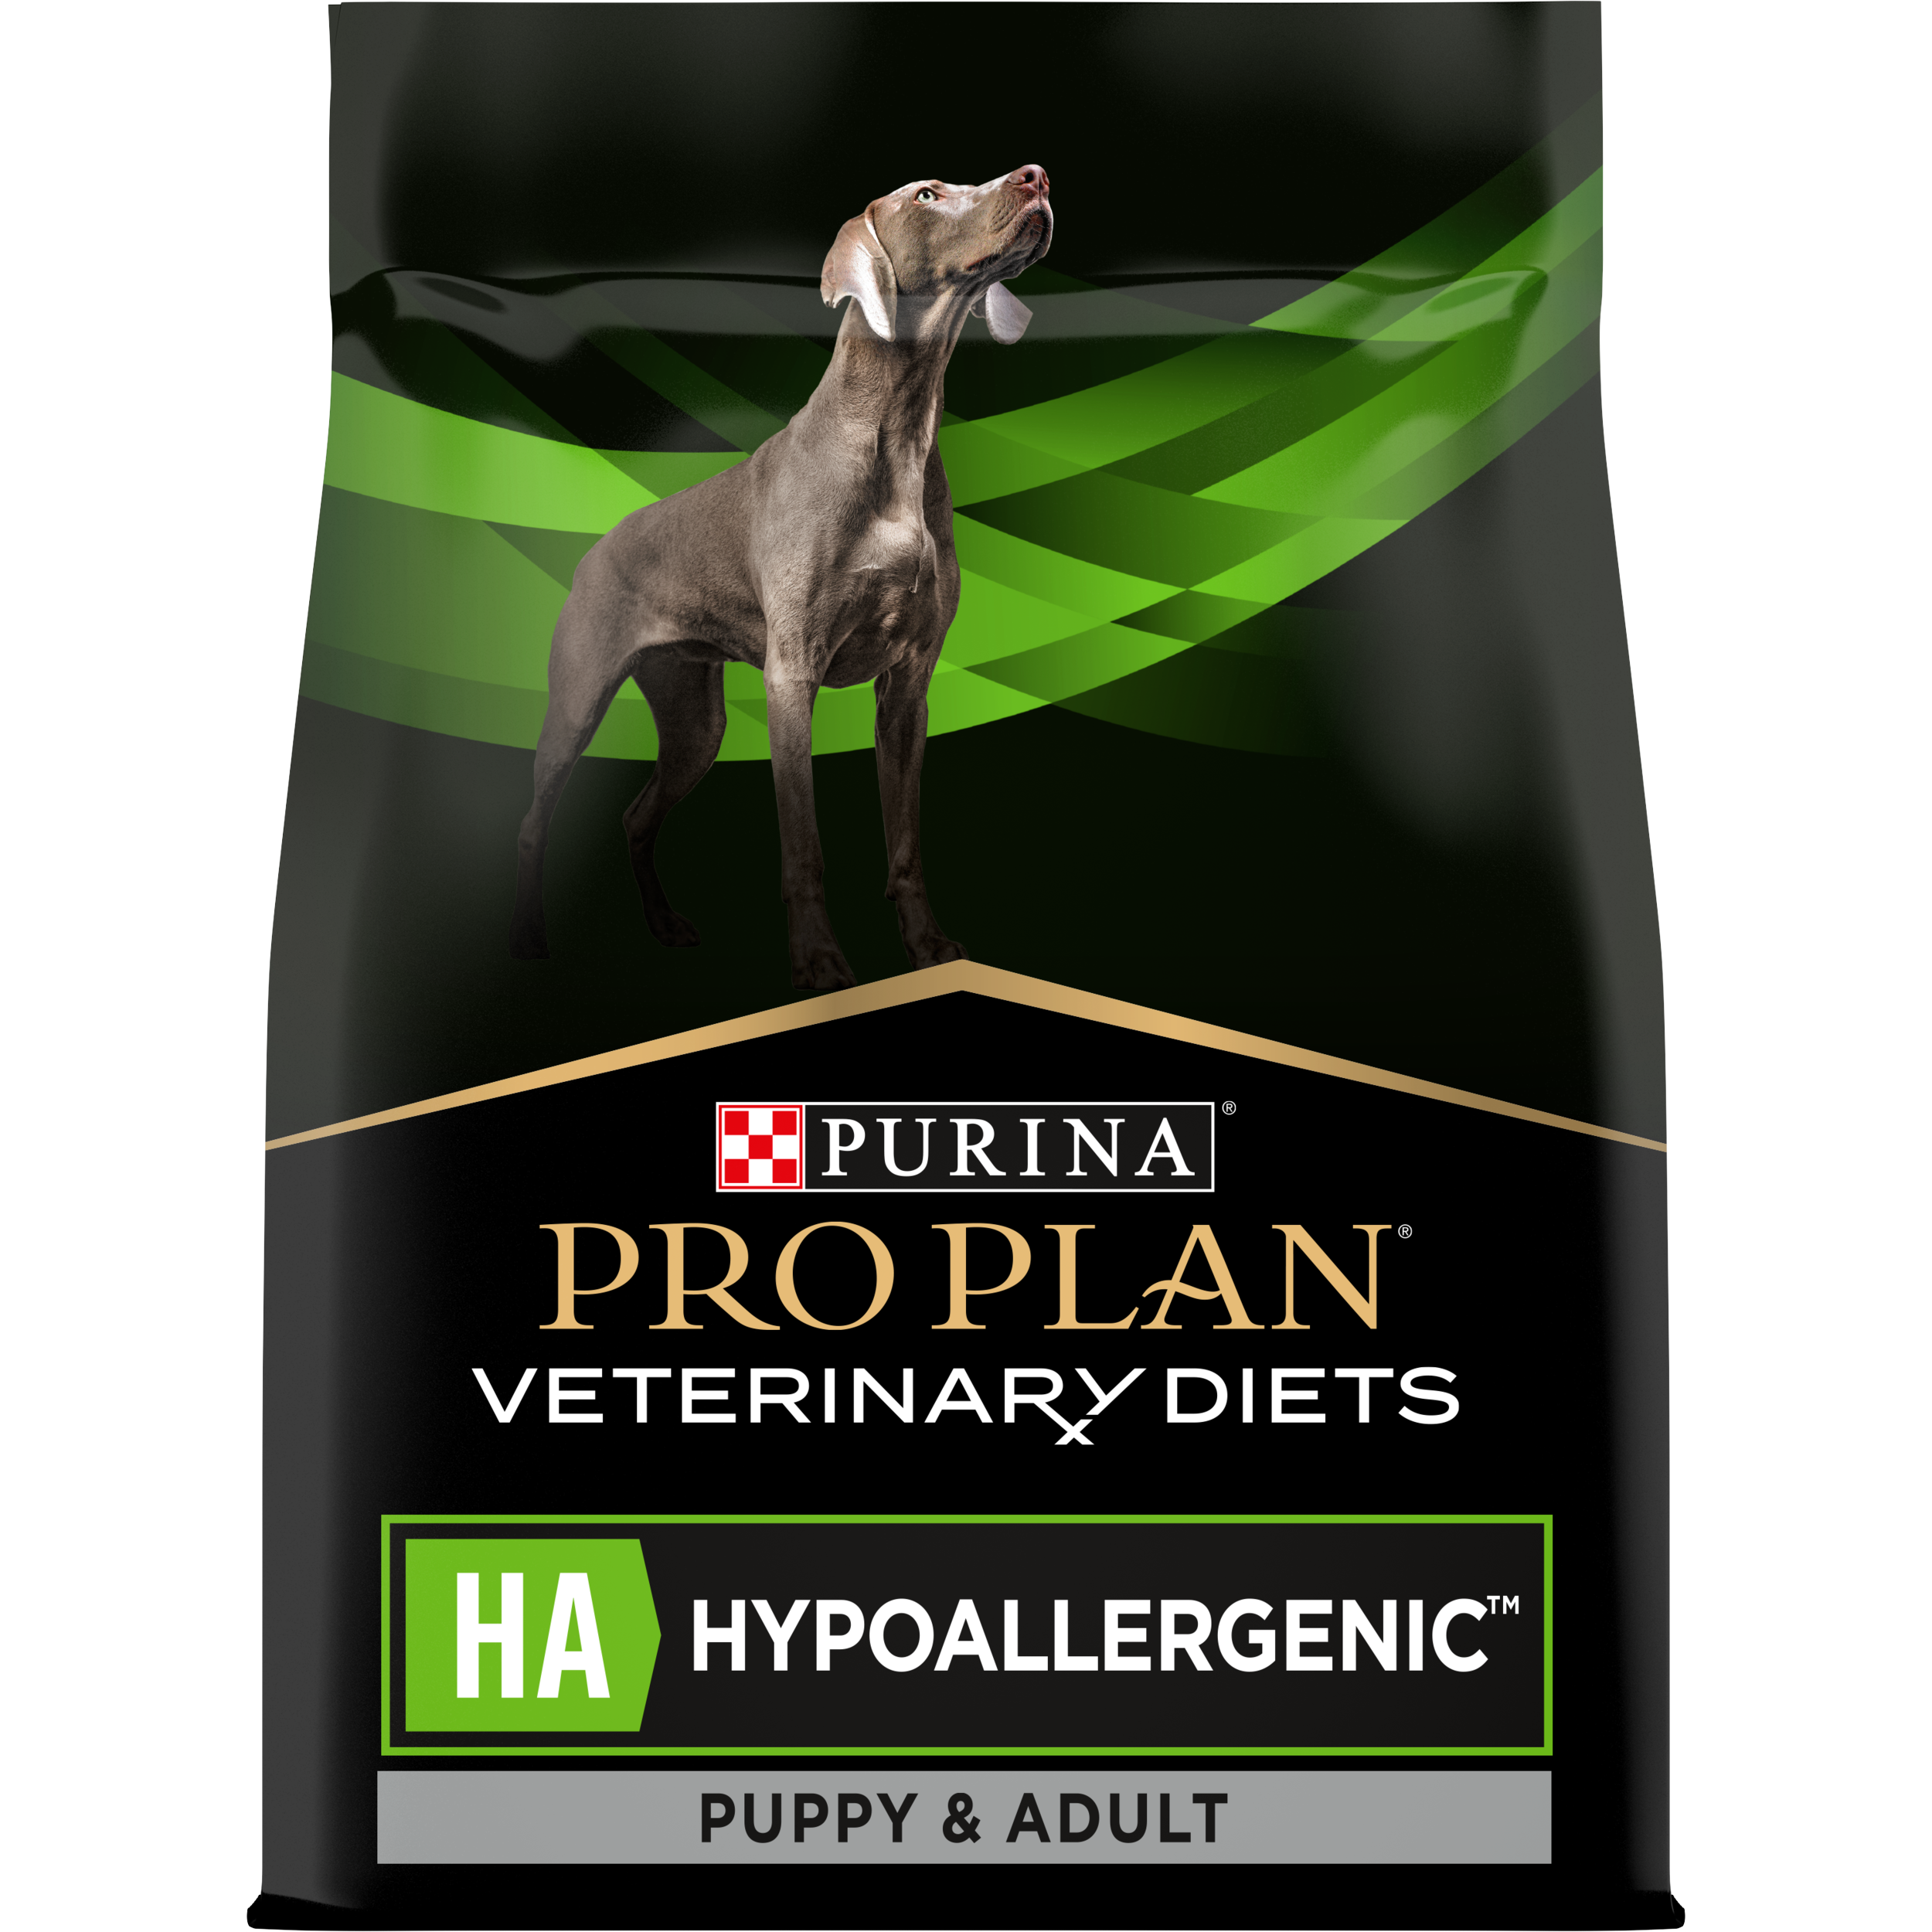 Condenseren Tactiel gevoel concept PPVD® HA Hypoallergenic hondenvoer | Purina